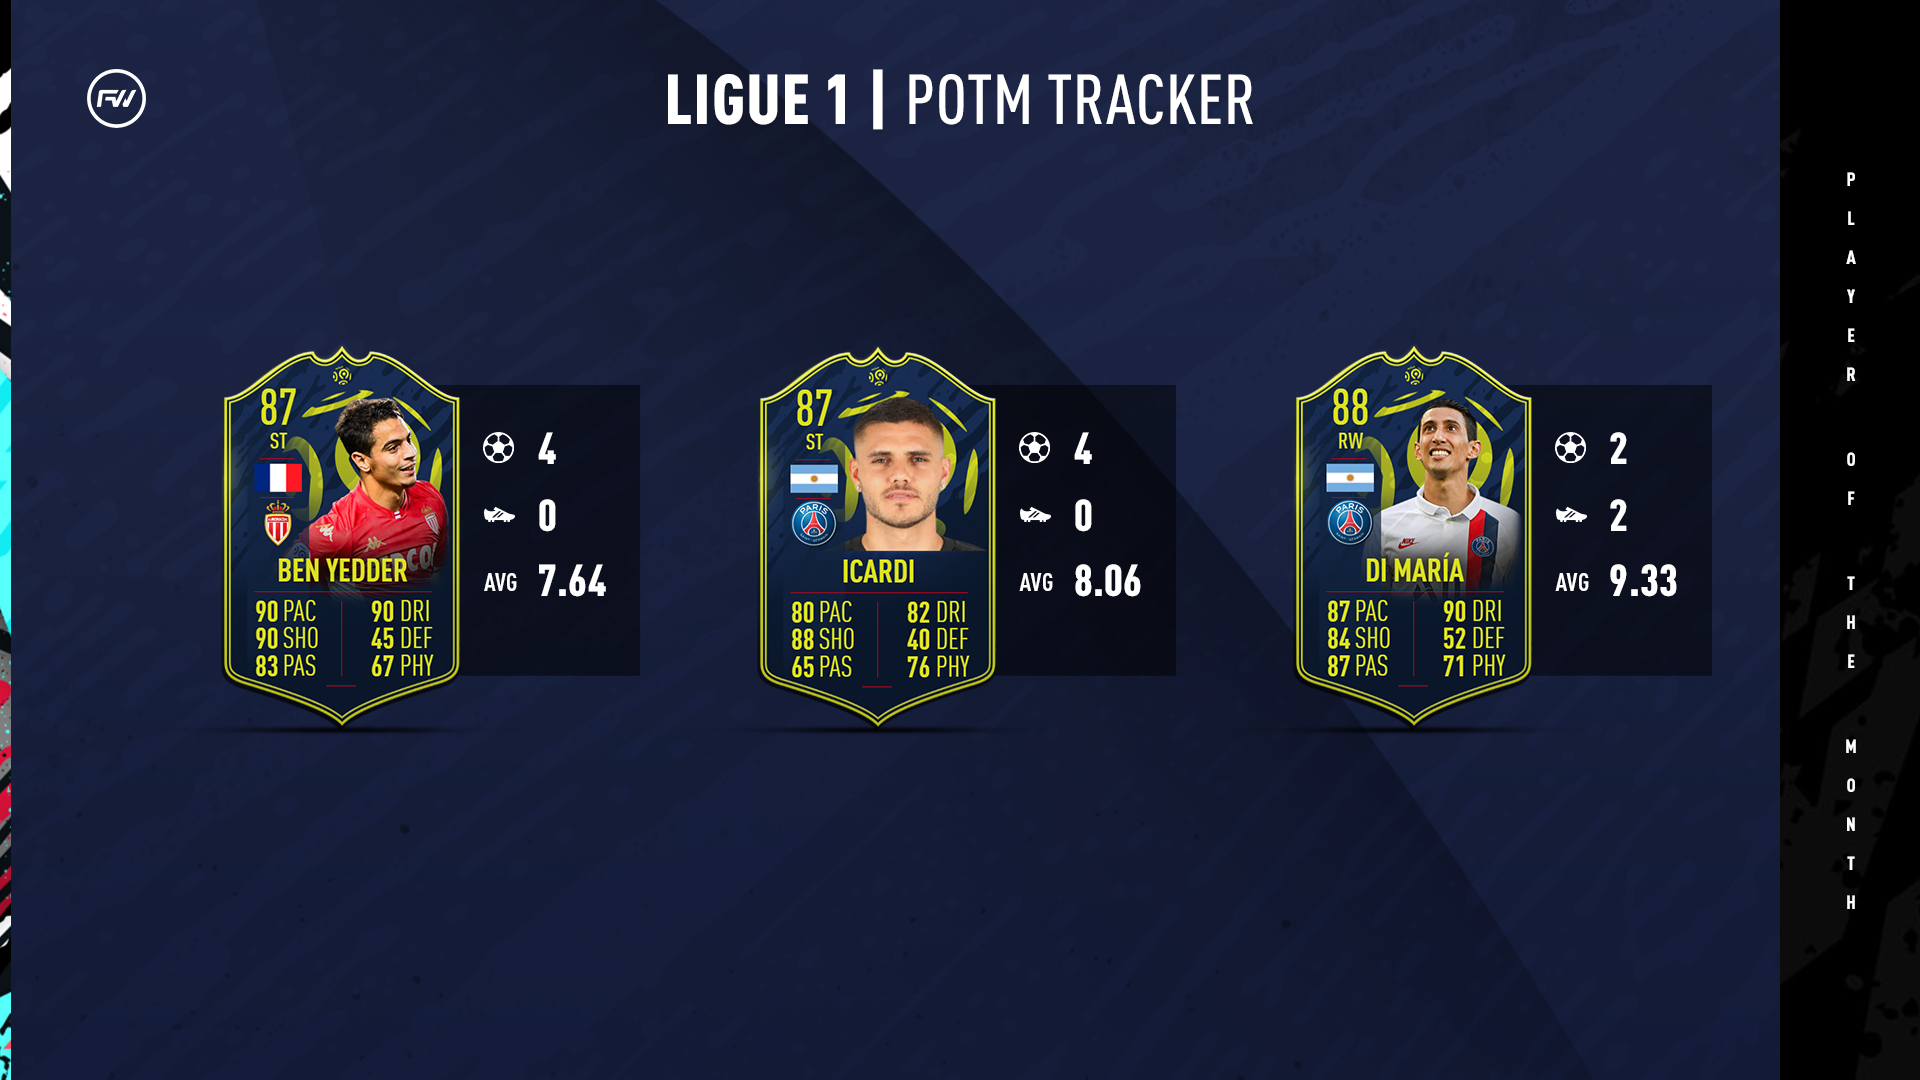 Ligue 1 Potm